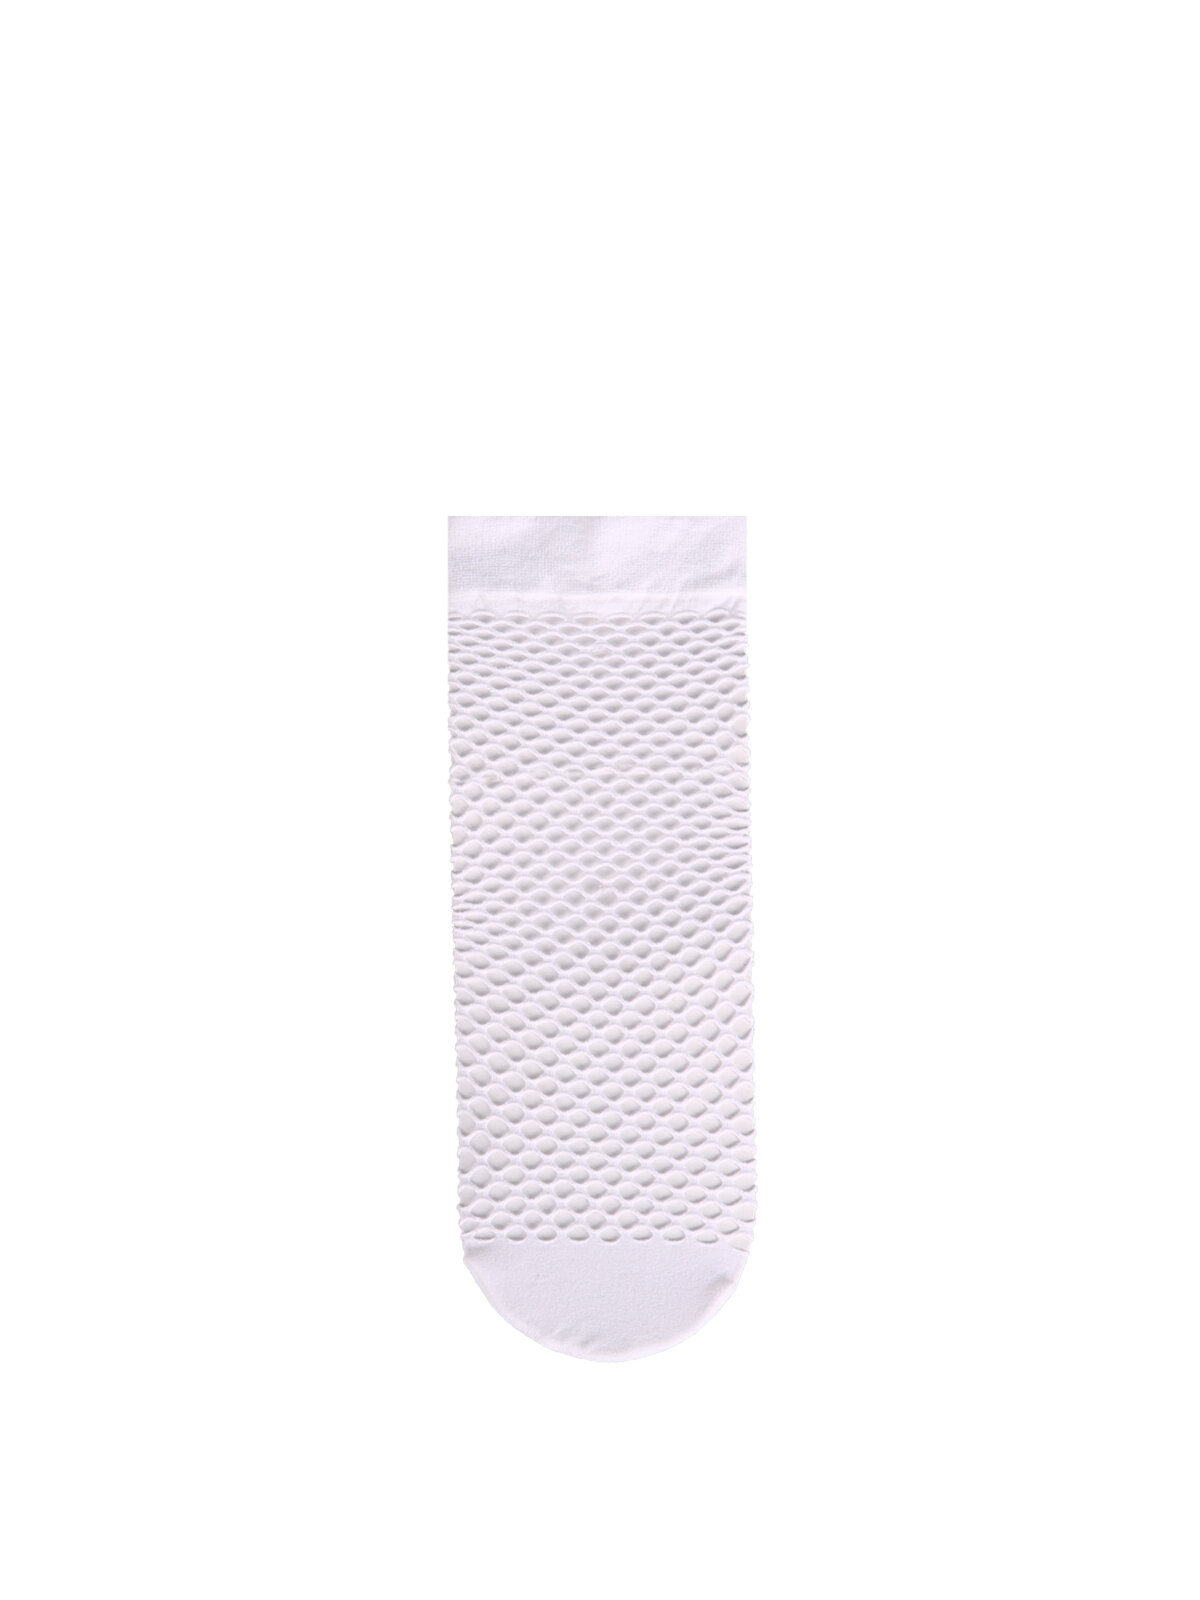 Показати інформацію про Шкарпетки Жіночі Білі Cl1035250